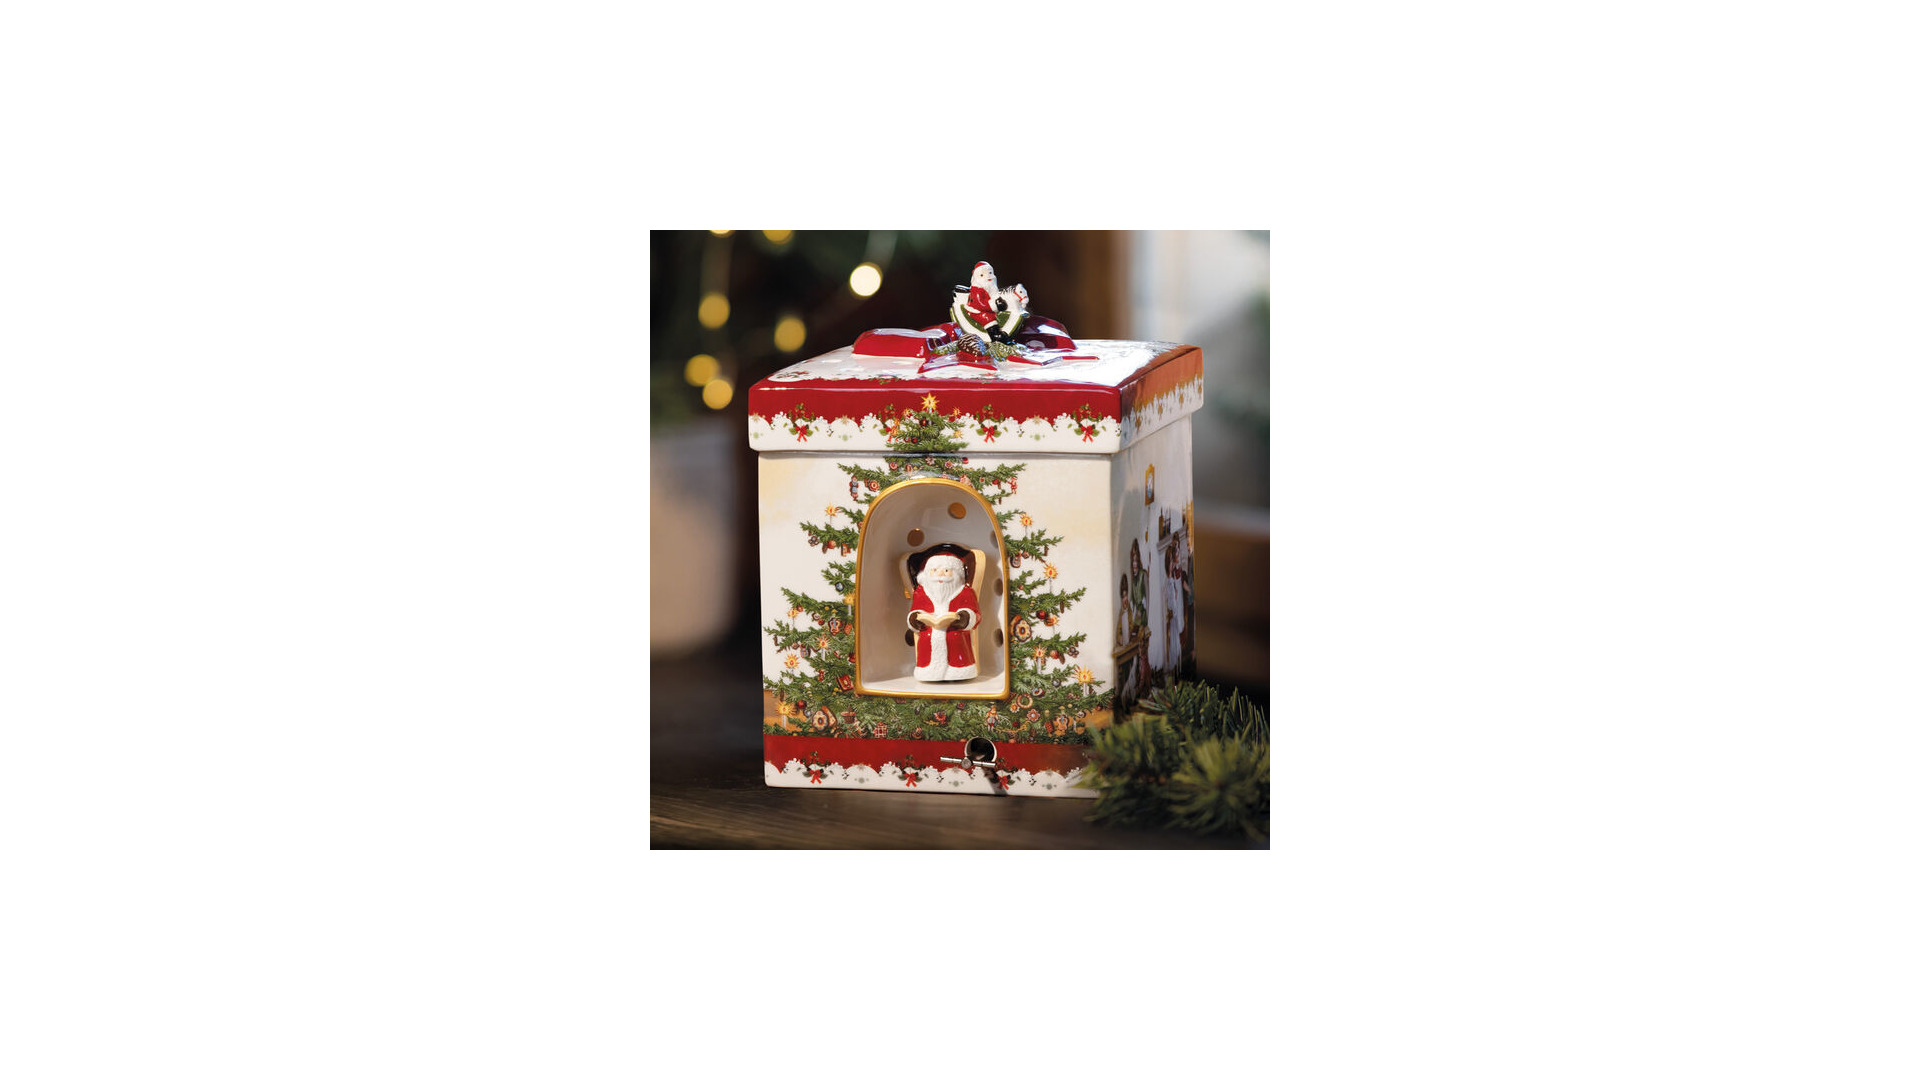 Музыкальная шкатулка Villeroy&Boch Christmas Toys Дети 17х17 см, круглая, фарфор